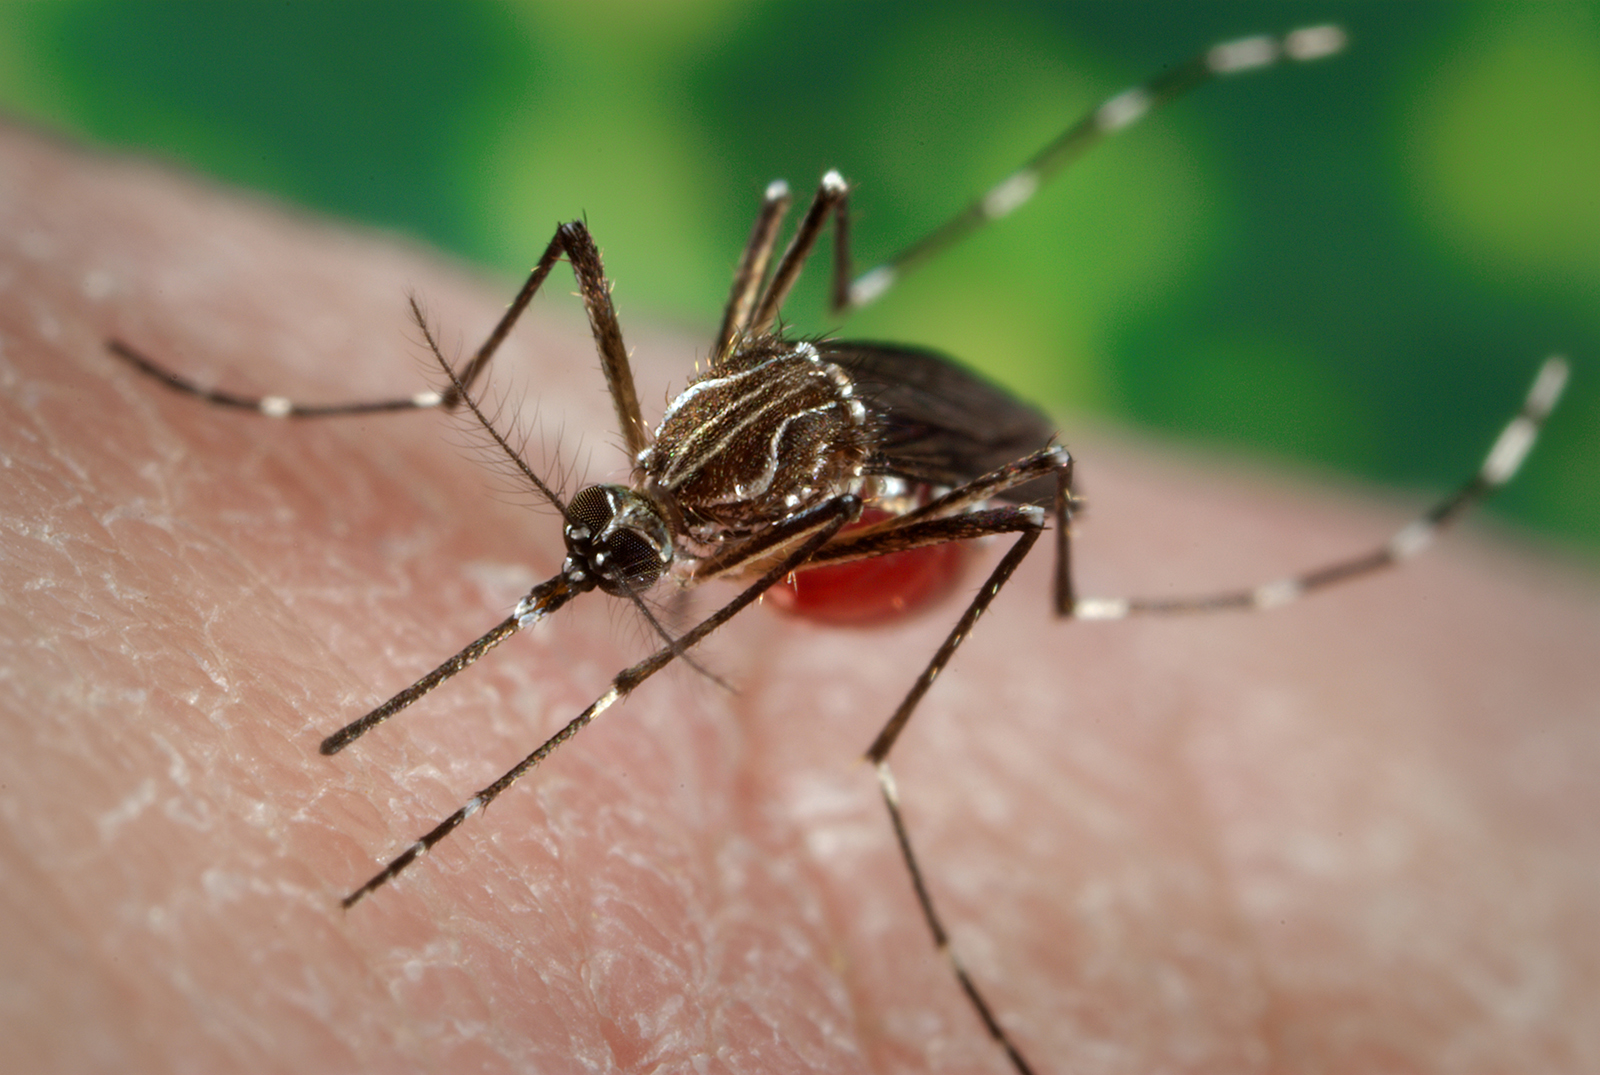   Muỗi Aedes aegypti là vật trung gian truyền virus sốt xuất huyết  